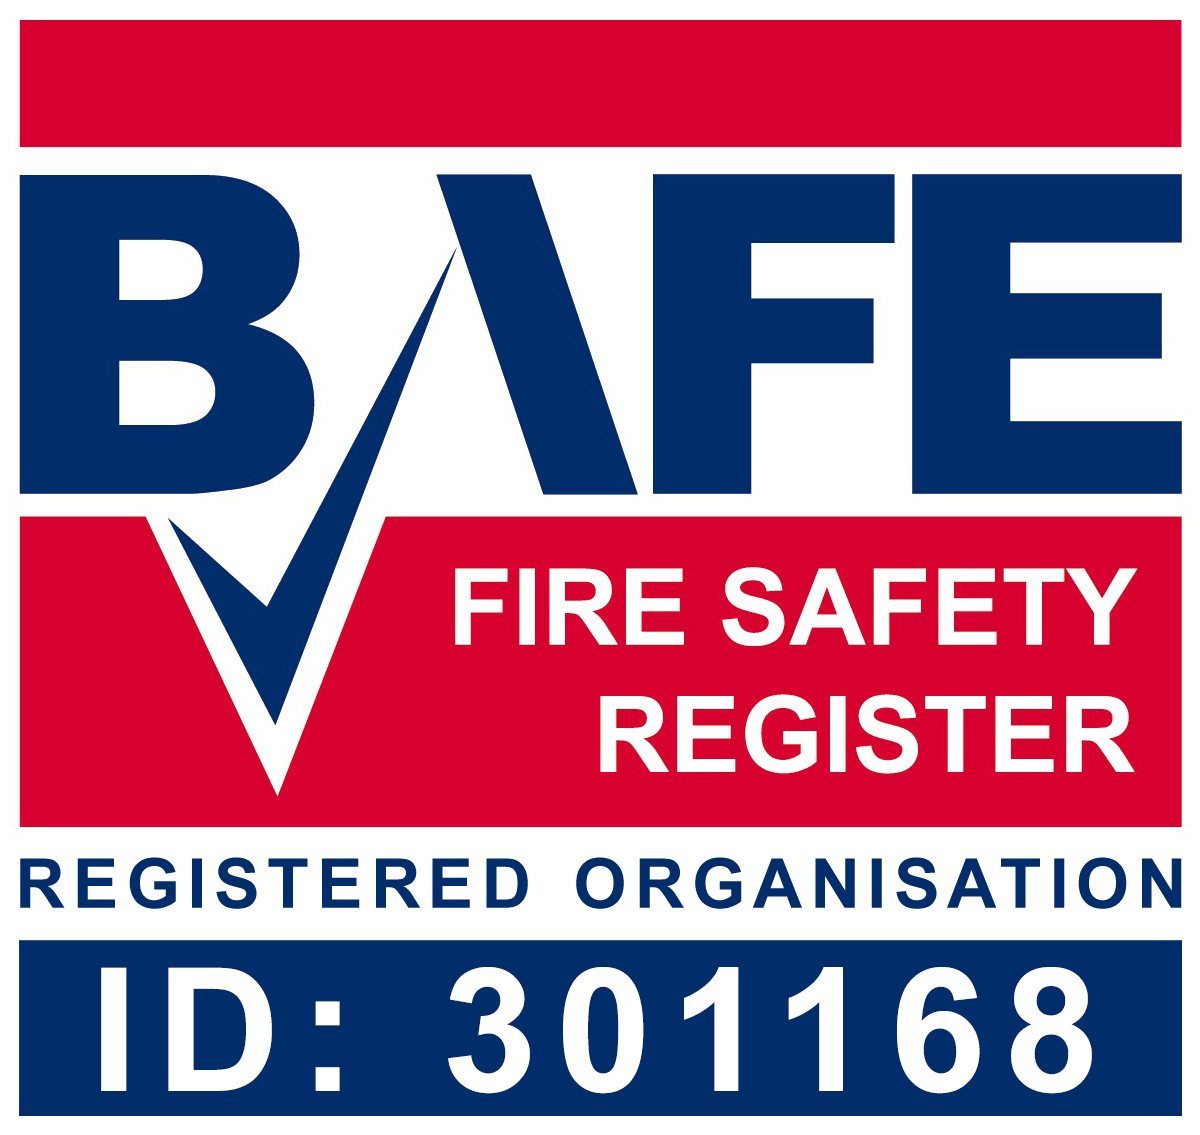 BAFE Fire Safety Register Registered Organisation 301168